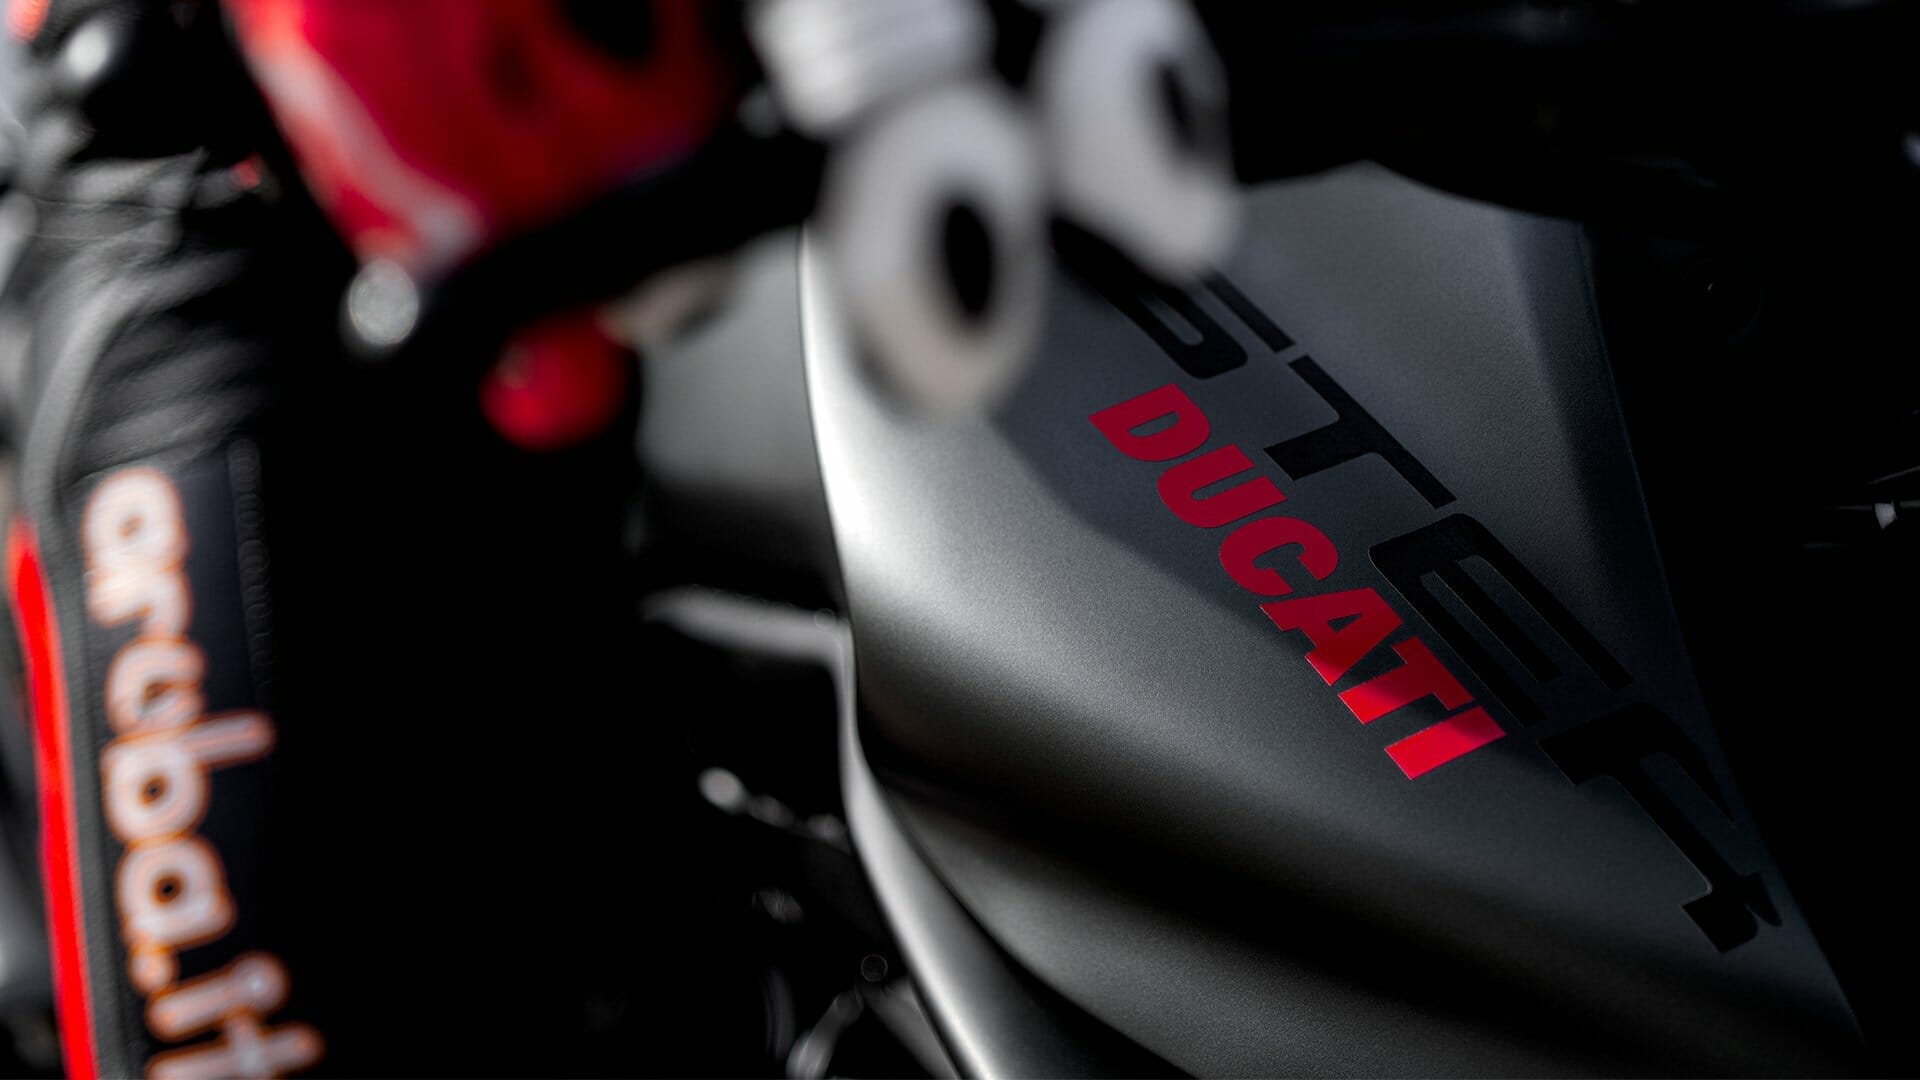 Neue Ducati Monster kommt
- auch in der MOTORRAD NACHRICHTEN APP